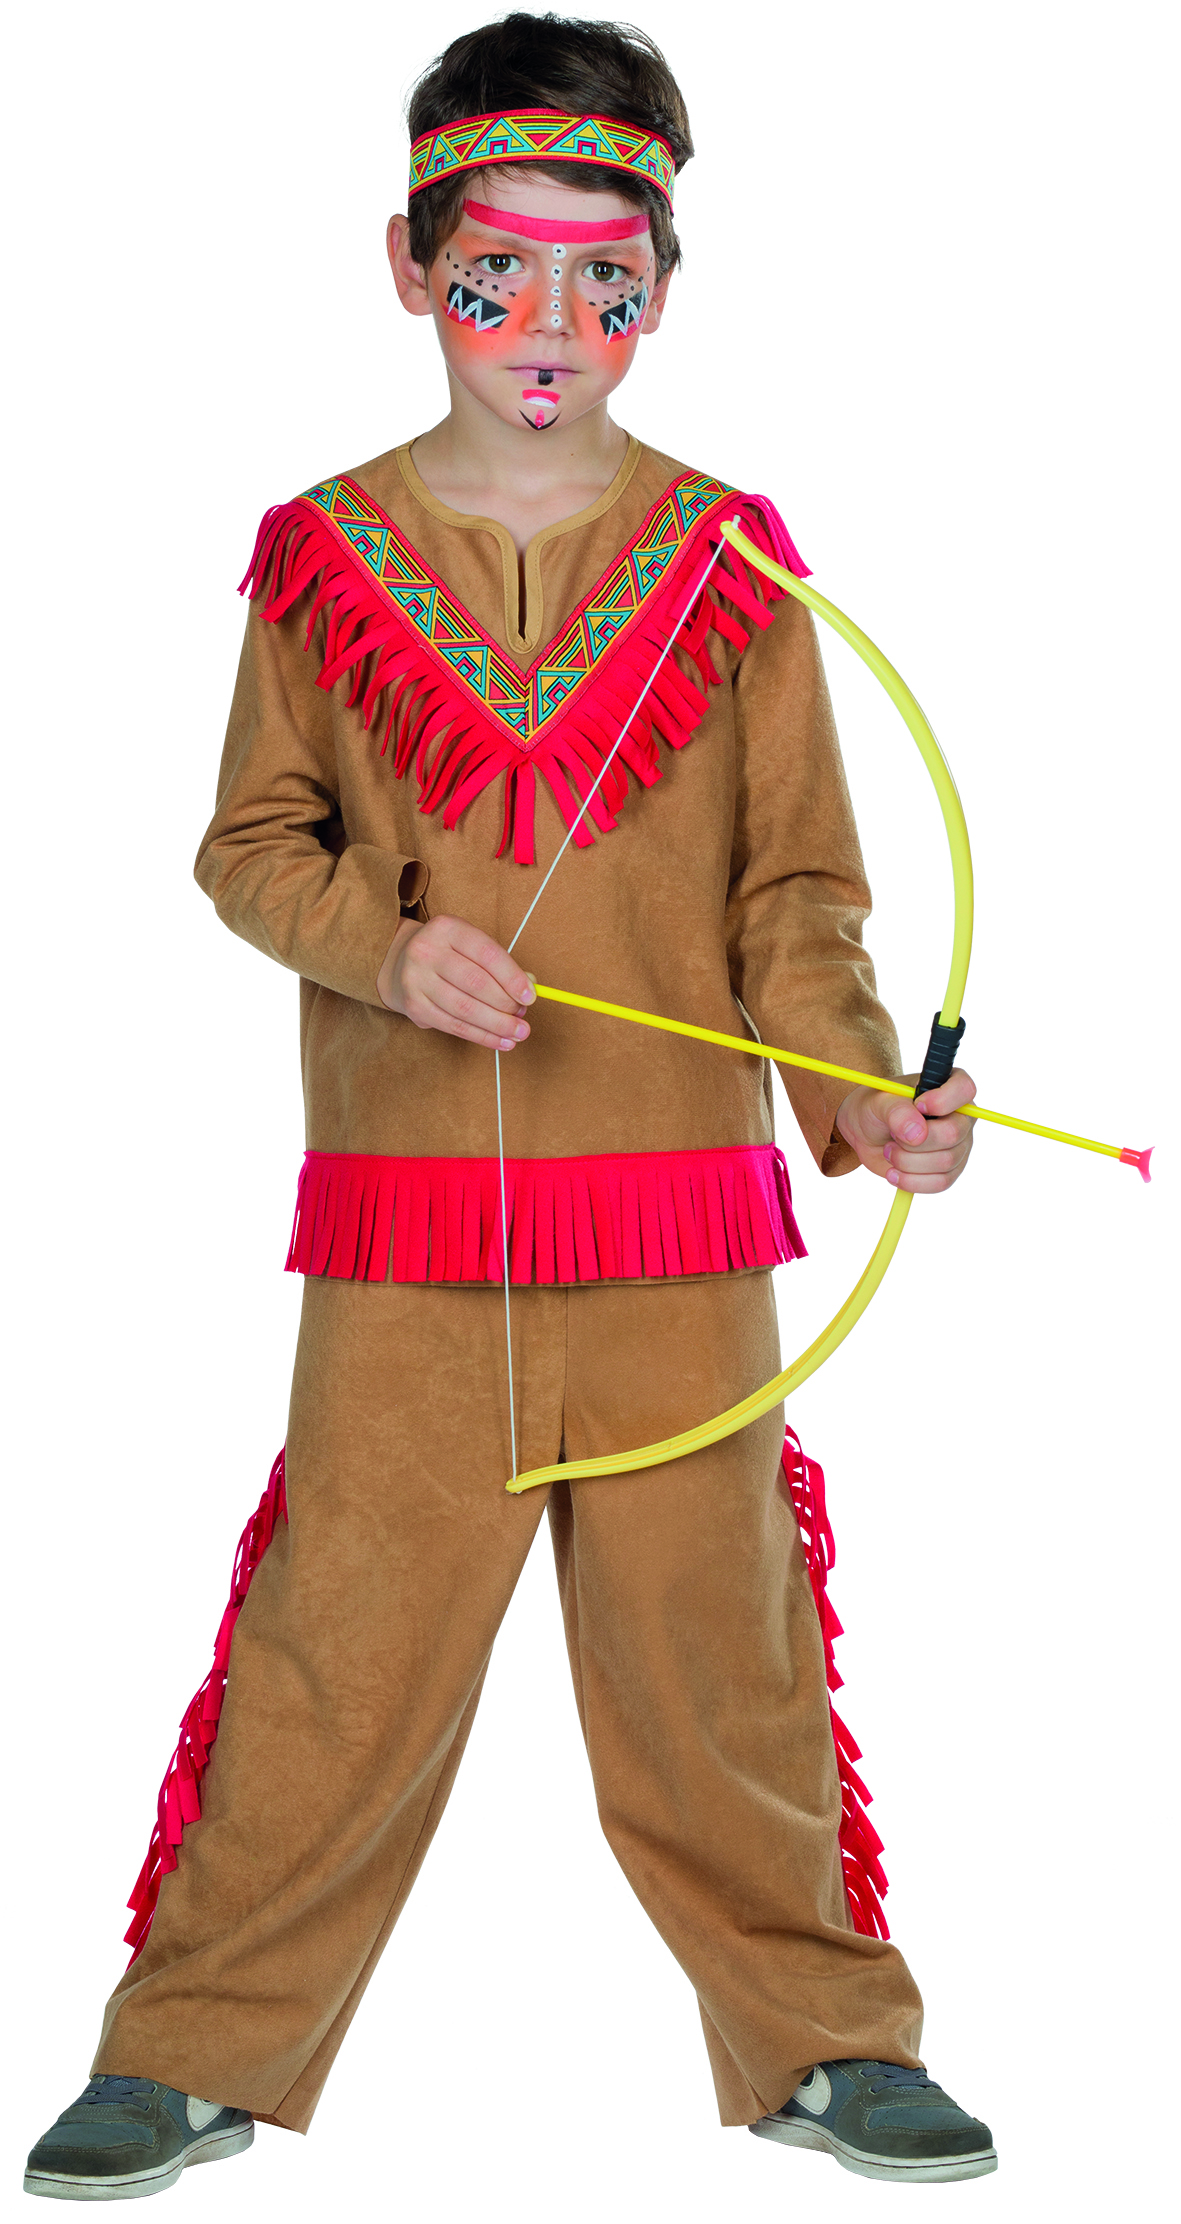 Mottoland 116283 - Indianer Kostüm - Indianerjunge  Gr. 116 - 152